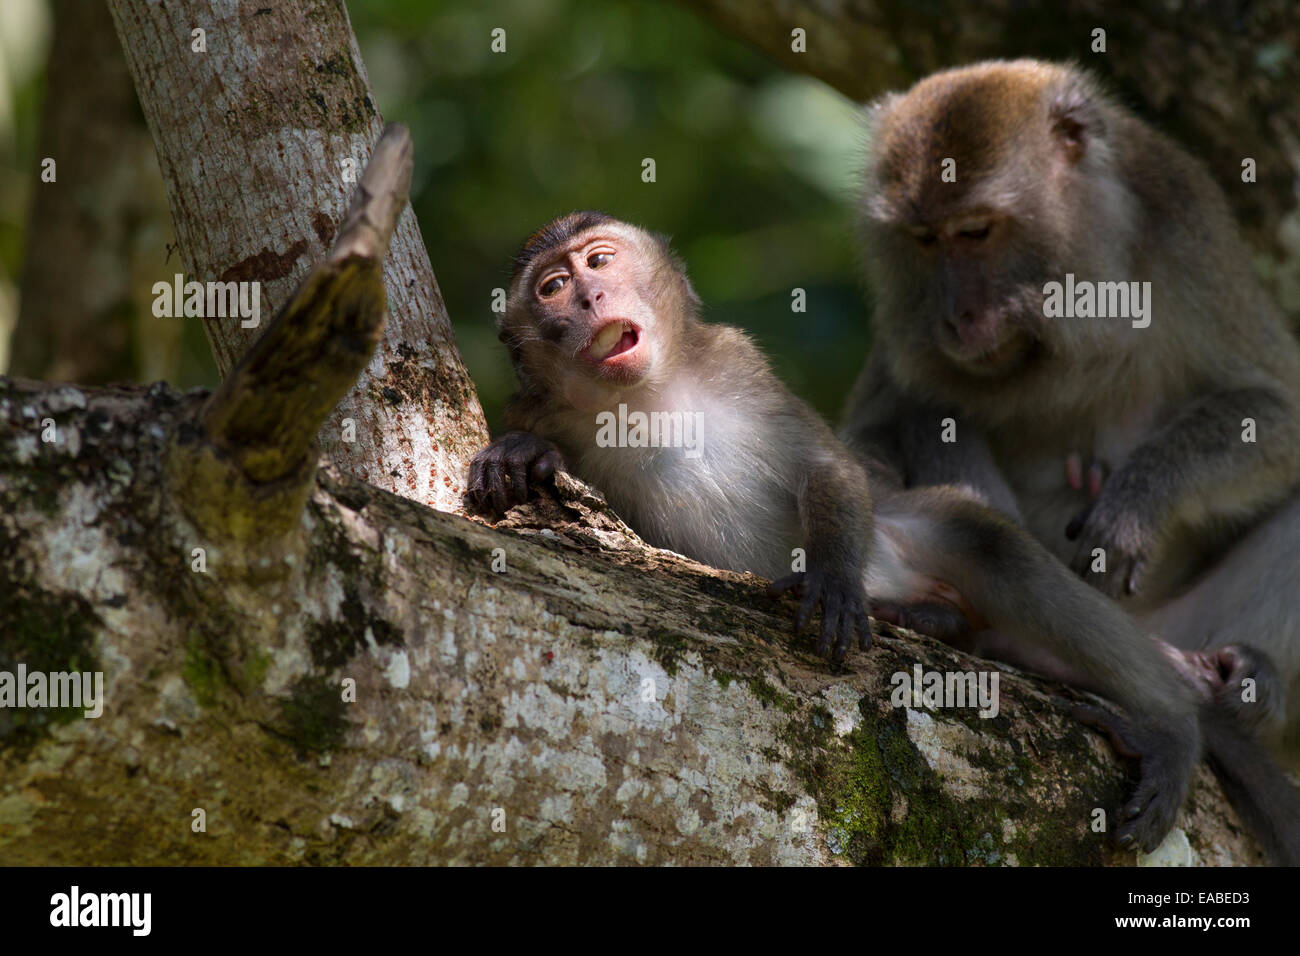 Manger du crabe - Macaca fascicularis macaque - l'alimentation et le toilettage, le parc national de Bako, Sarawak, Malaisie Banque D'Images